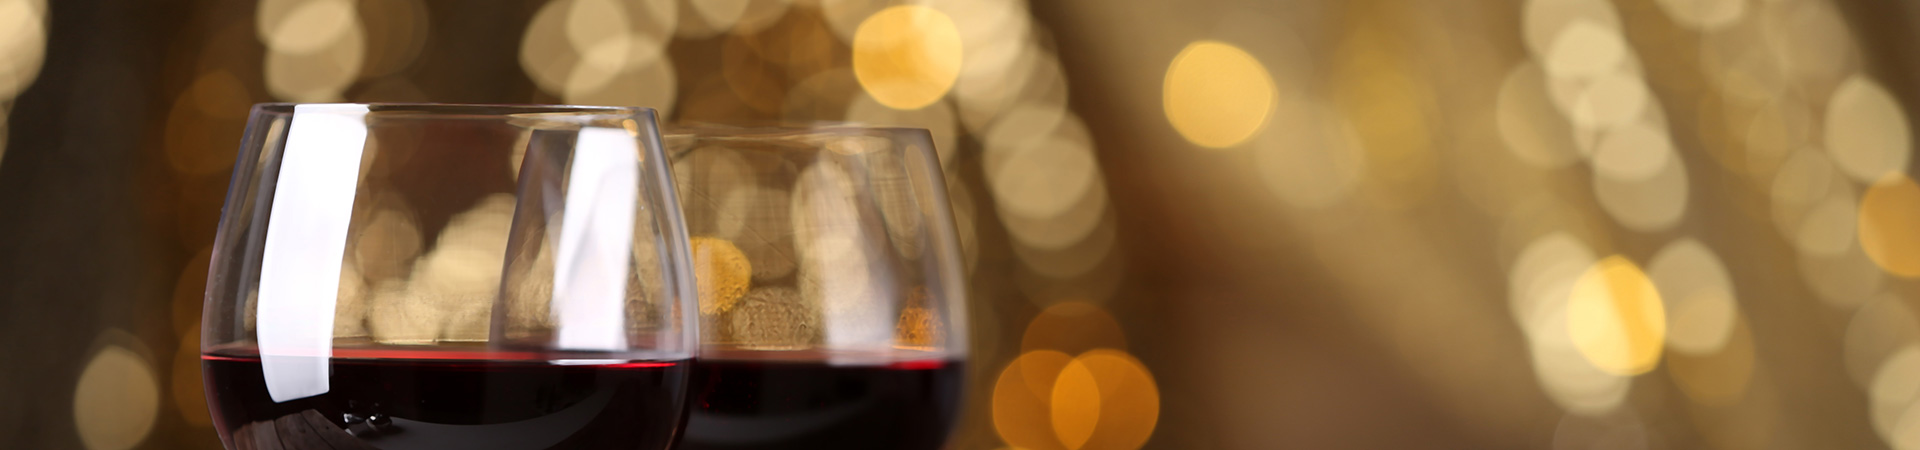 vini delle langhe in confezioni regalo